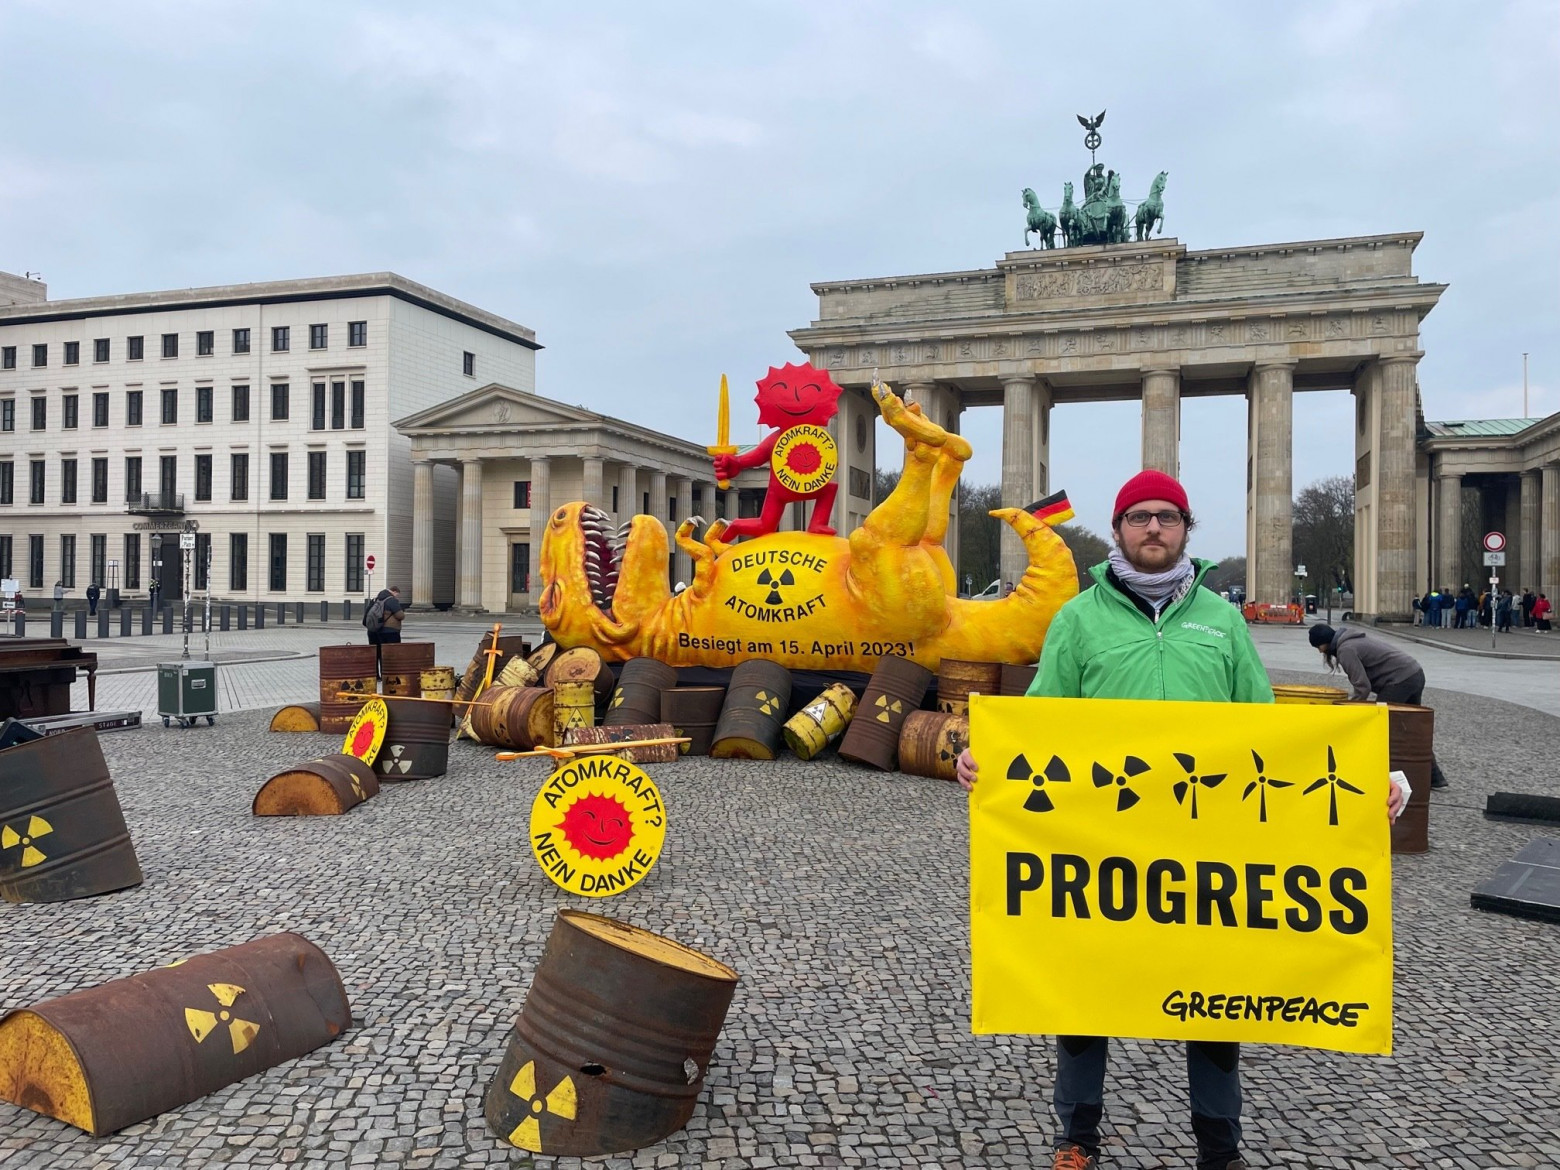 Отказ от атомной энергетики в Германии. Инсталляция и мероприятие Greenpeace 15 апреля в центре Берлина, посвященное закрытию немецкийх АЭС.